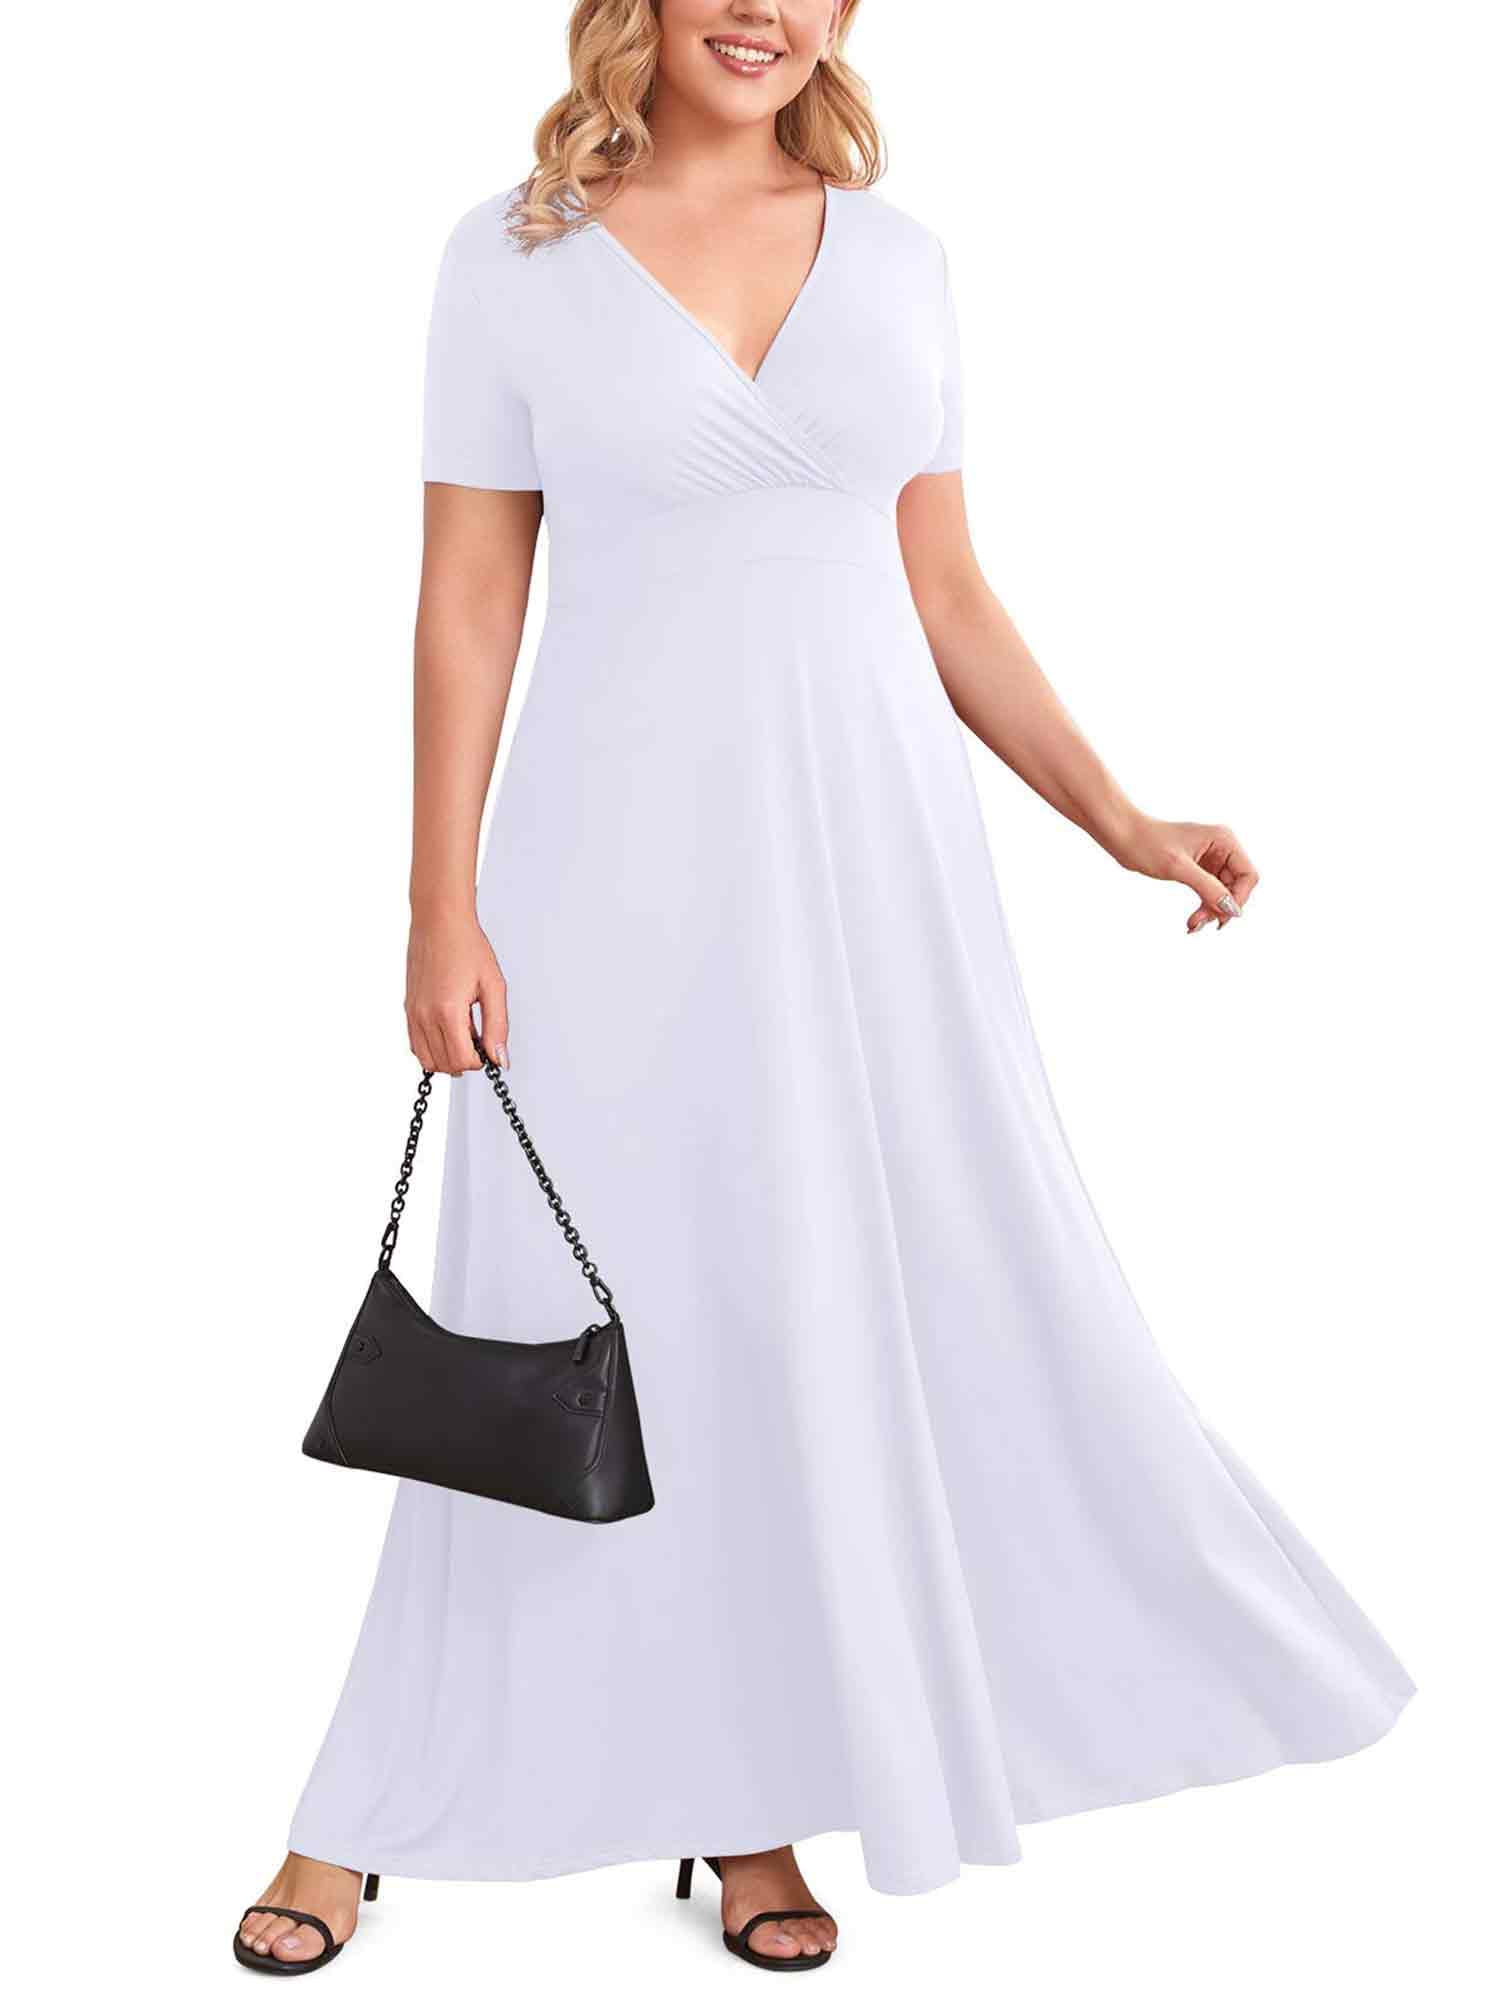 POSESHE Women Plus Size V Neck Short Sleeve Evening Dress, Elegant ...